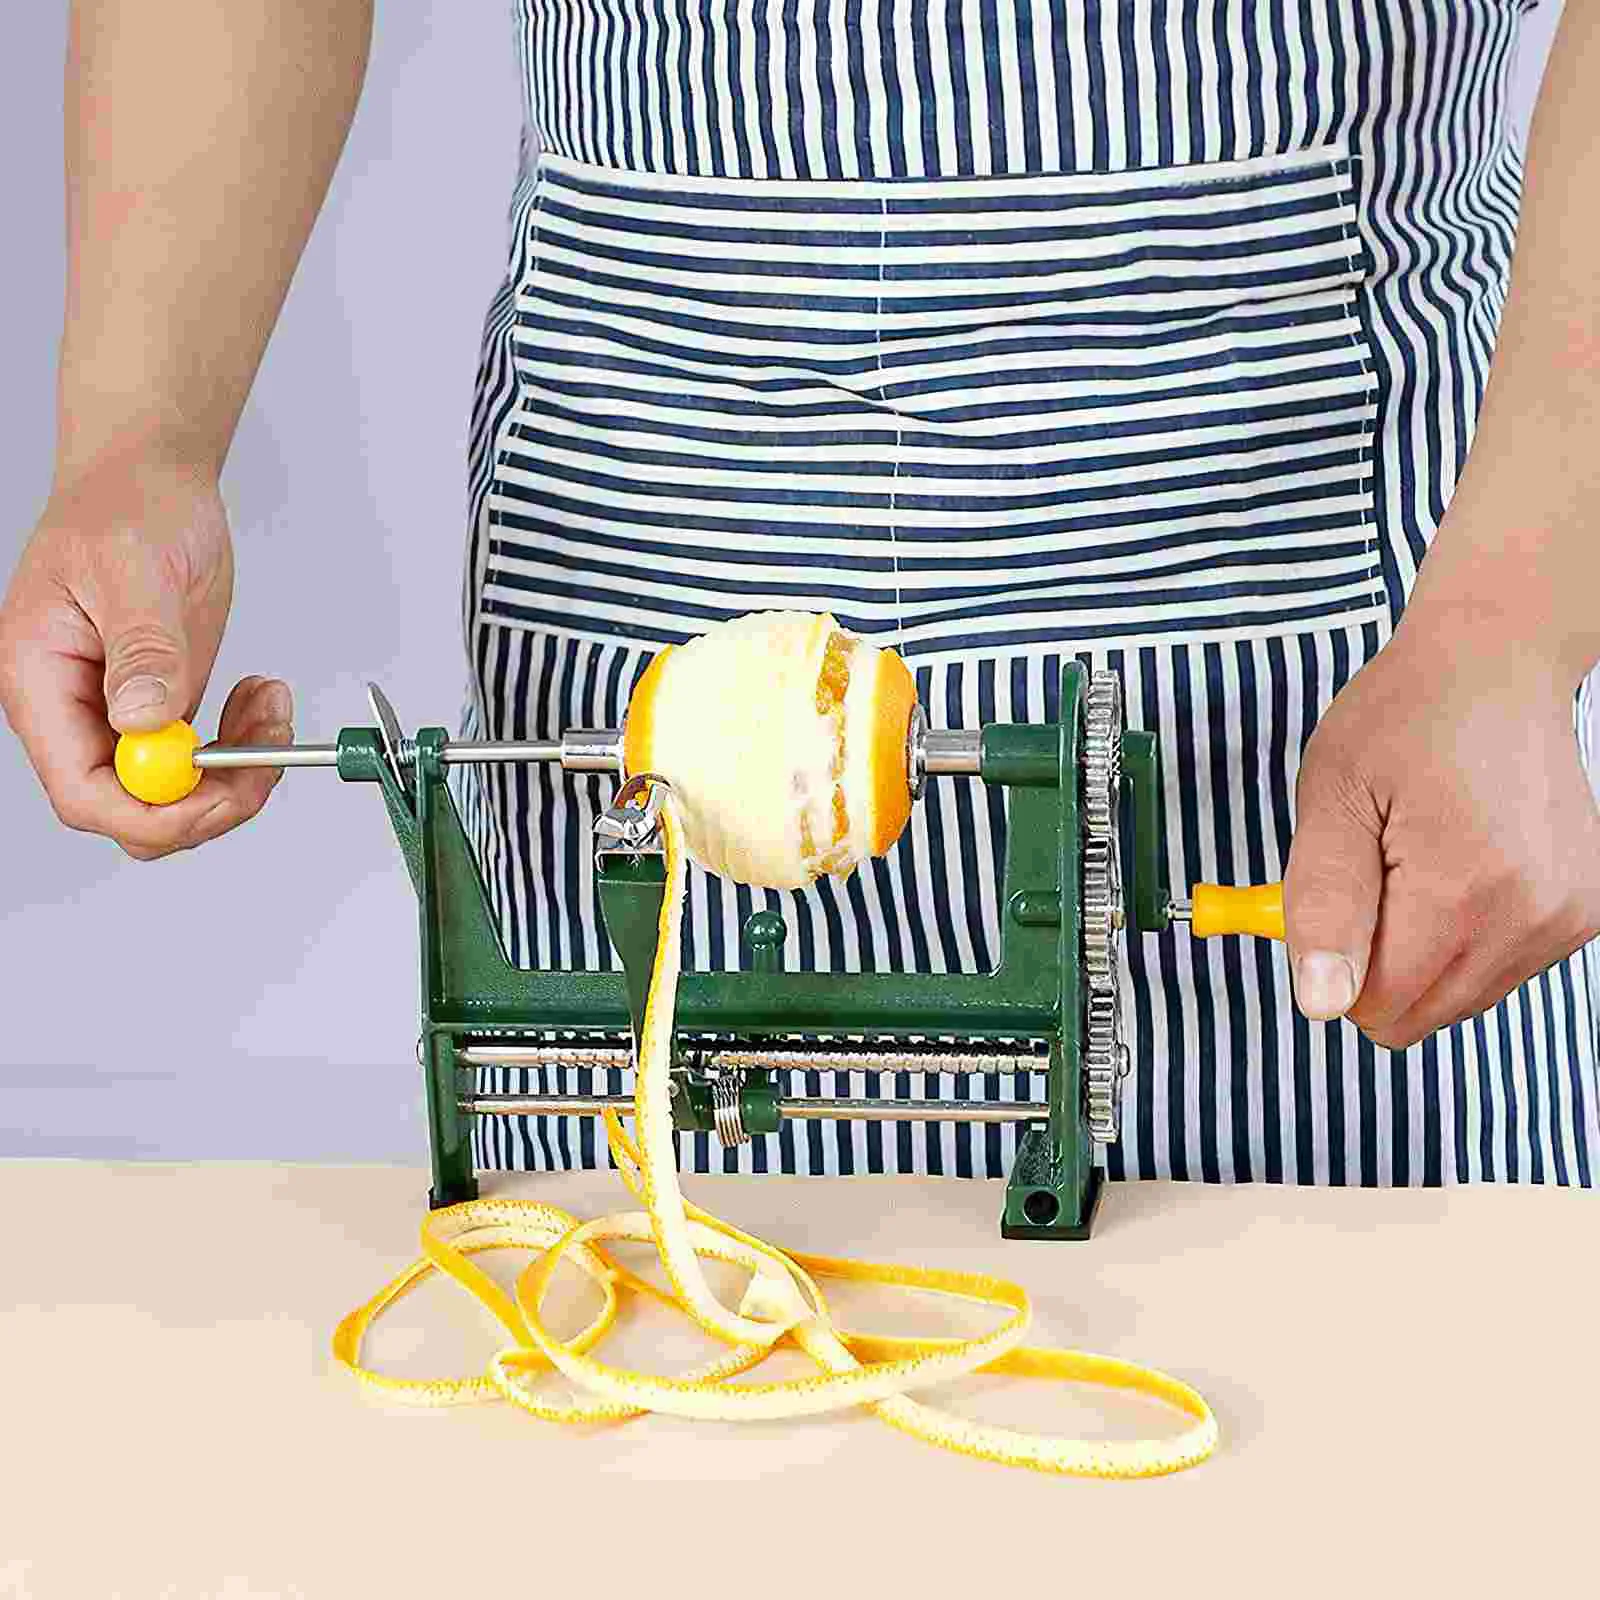 https://ae01.alicdn.com/kf/S6e2af7adf2f34552b267ef7837871c7dB/Hand-Orange-Fruit-Peeler-Vegetable-Peeler-Scraper-Slicer-Manual-Desktop-Peeler-Carrot-Potato-Peeler-for-Orange.jpg